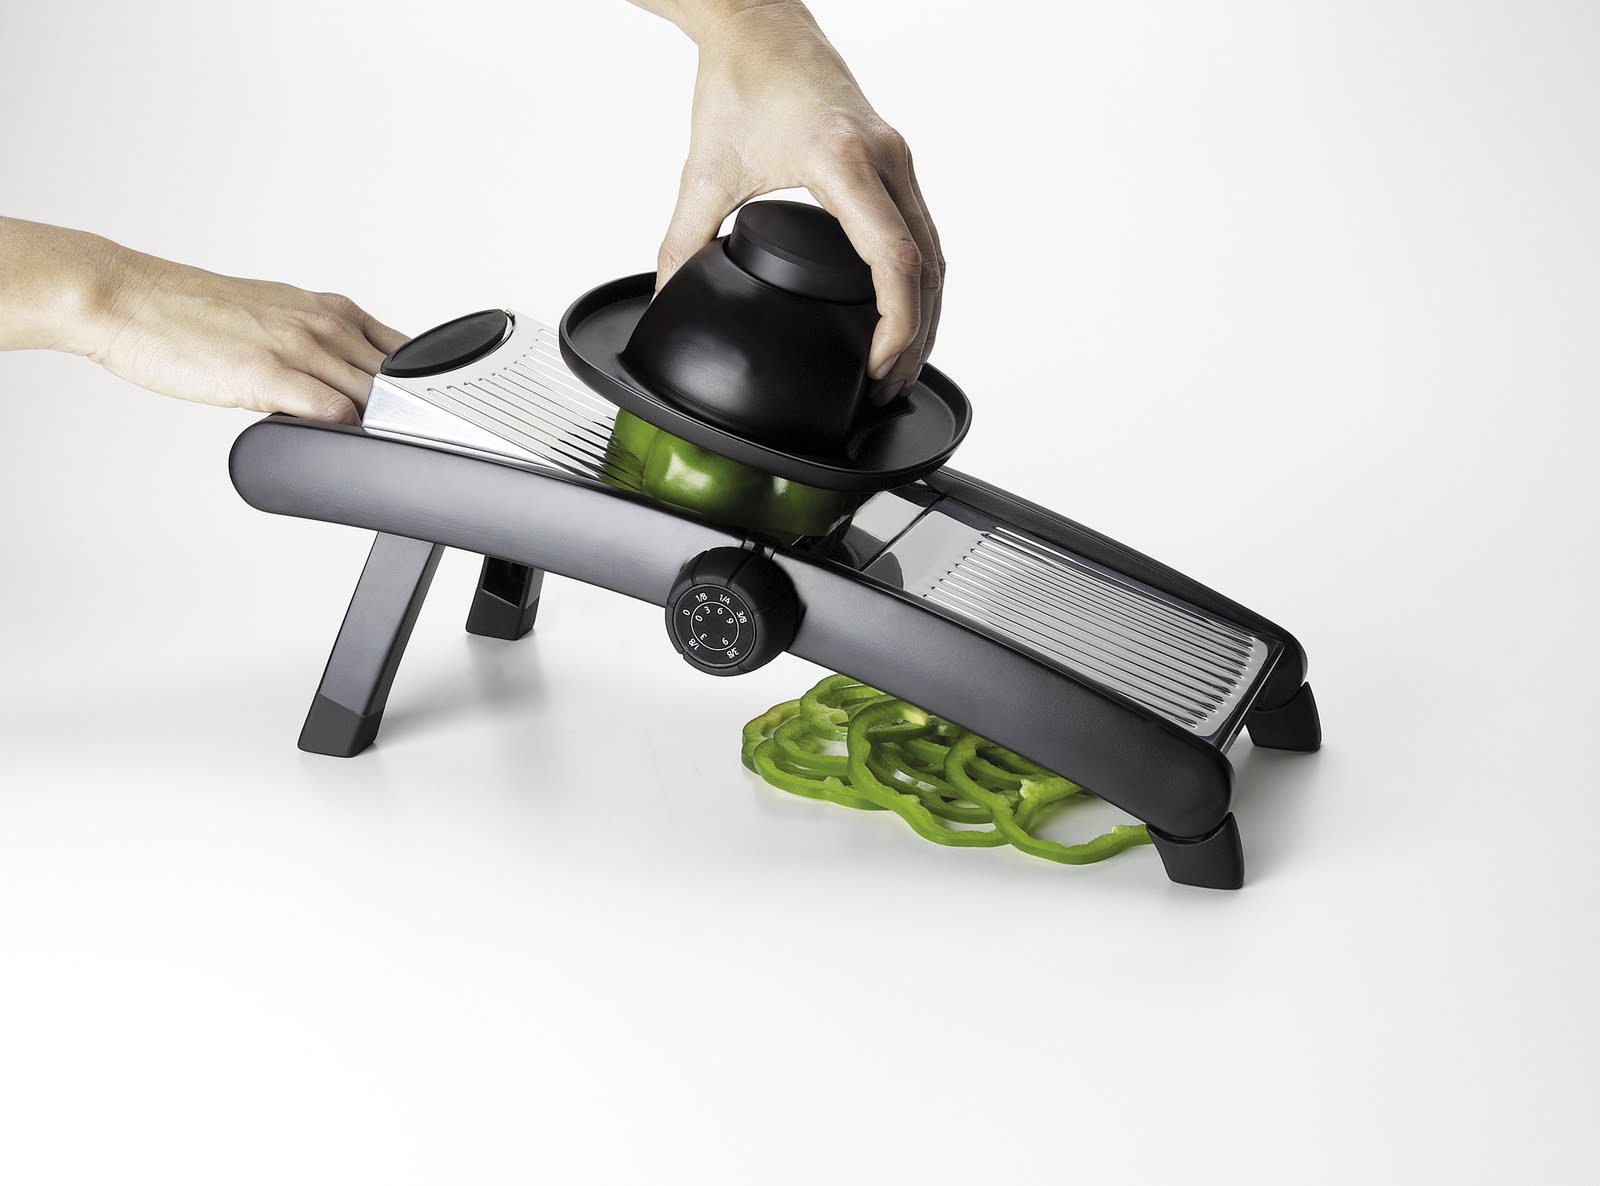 OXO Good Grips Handheld Mandoline Food Slicer